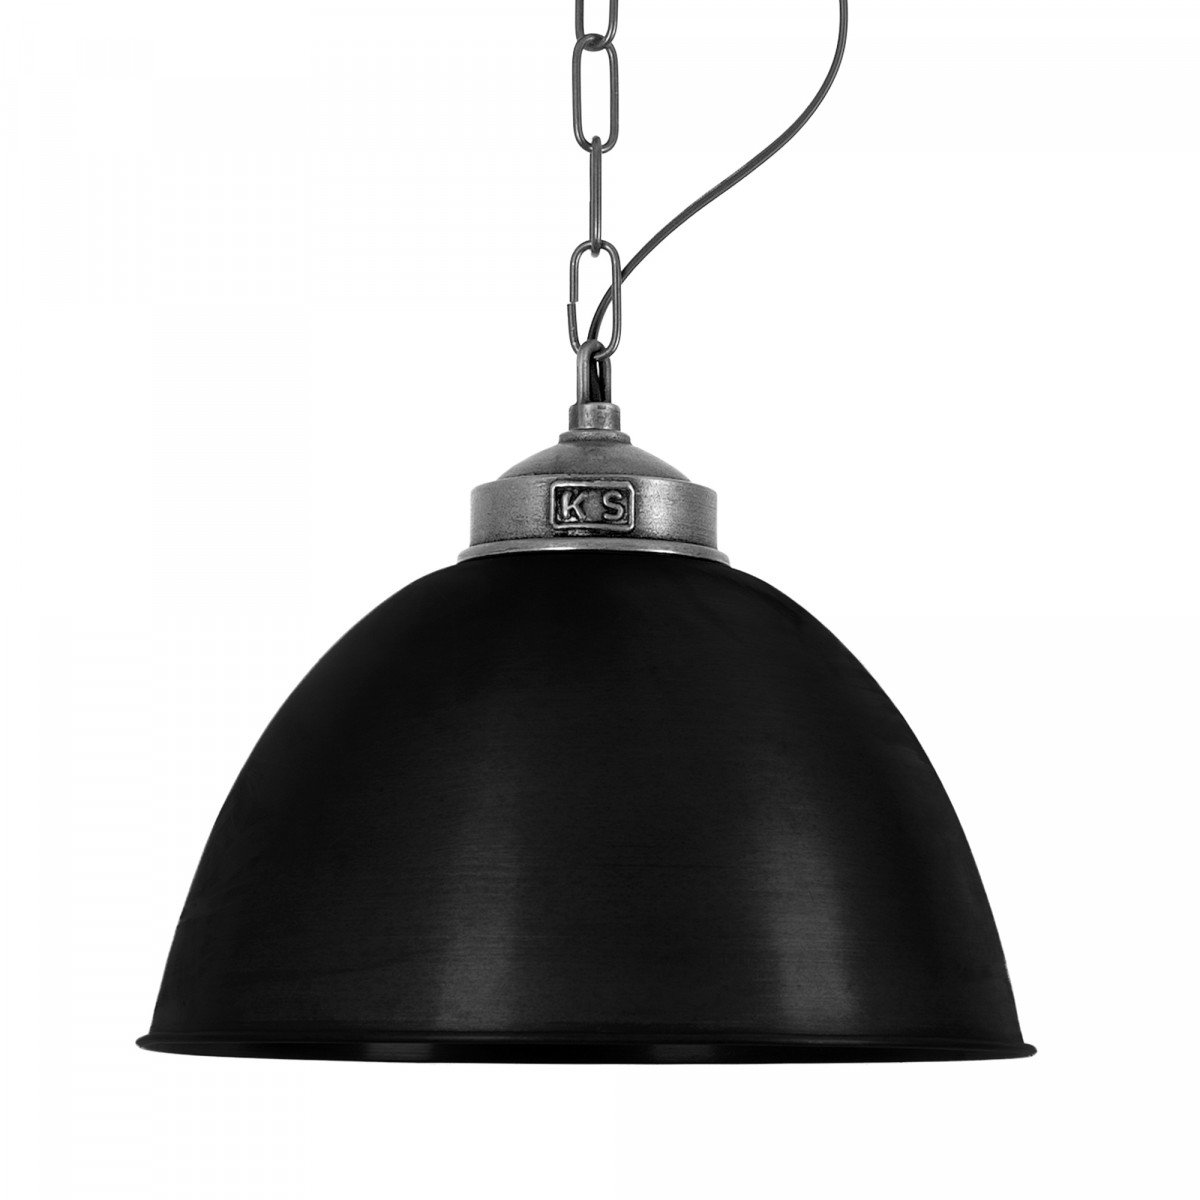 Lampe d'extérieur noire sur chaîne Loft ll (6577) de Nostalux